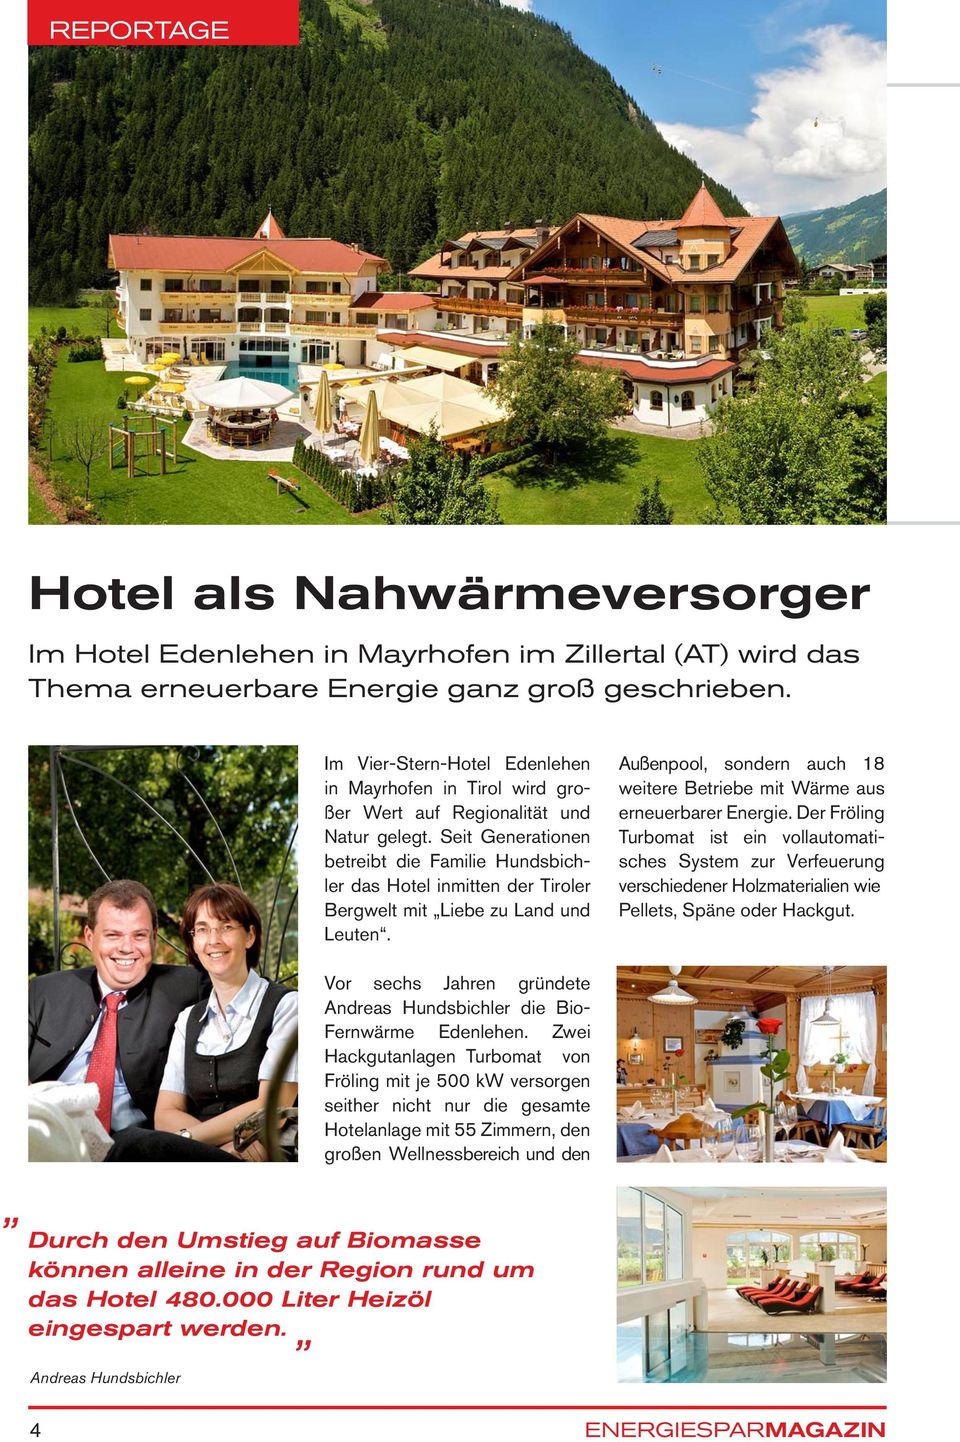 Seit Generationen betreibt die Familie Hundsbichler das Hotel inmitten der Tiroler Bergwelt mit Liebe zu Land und Leuten.